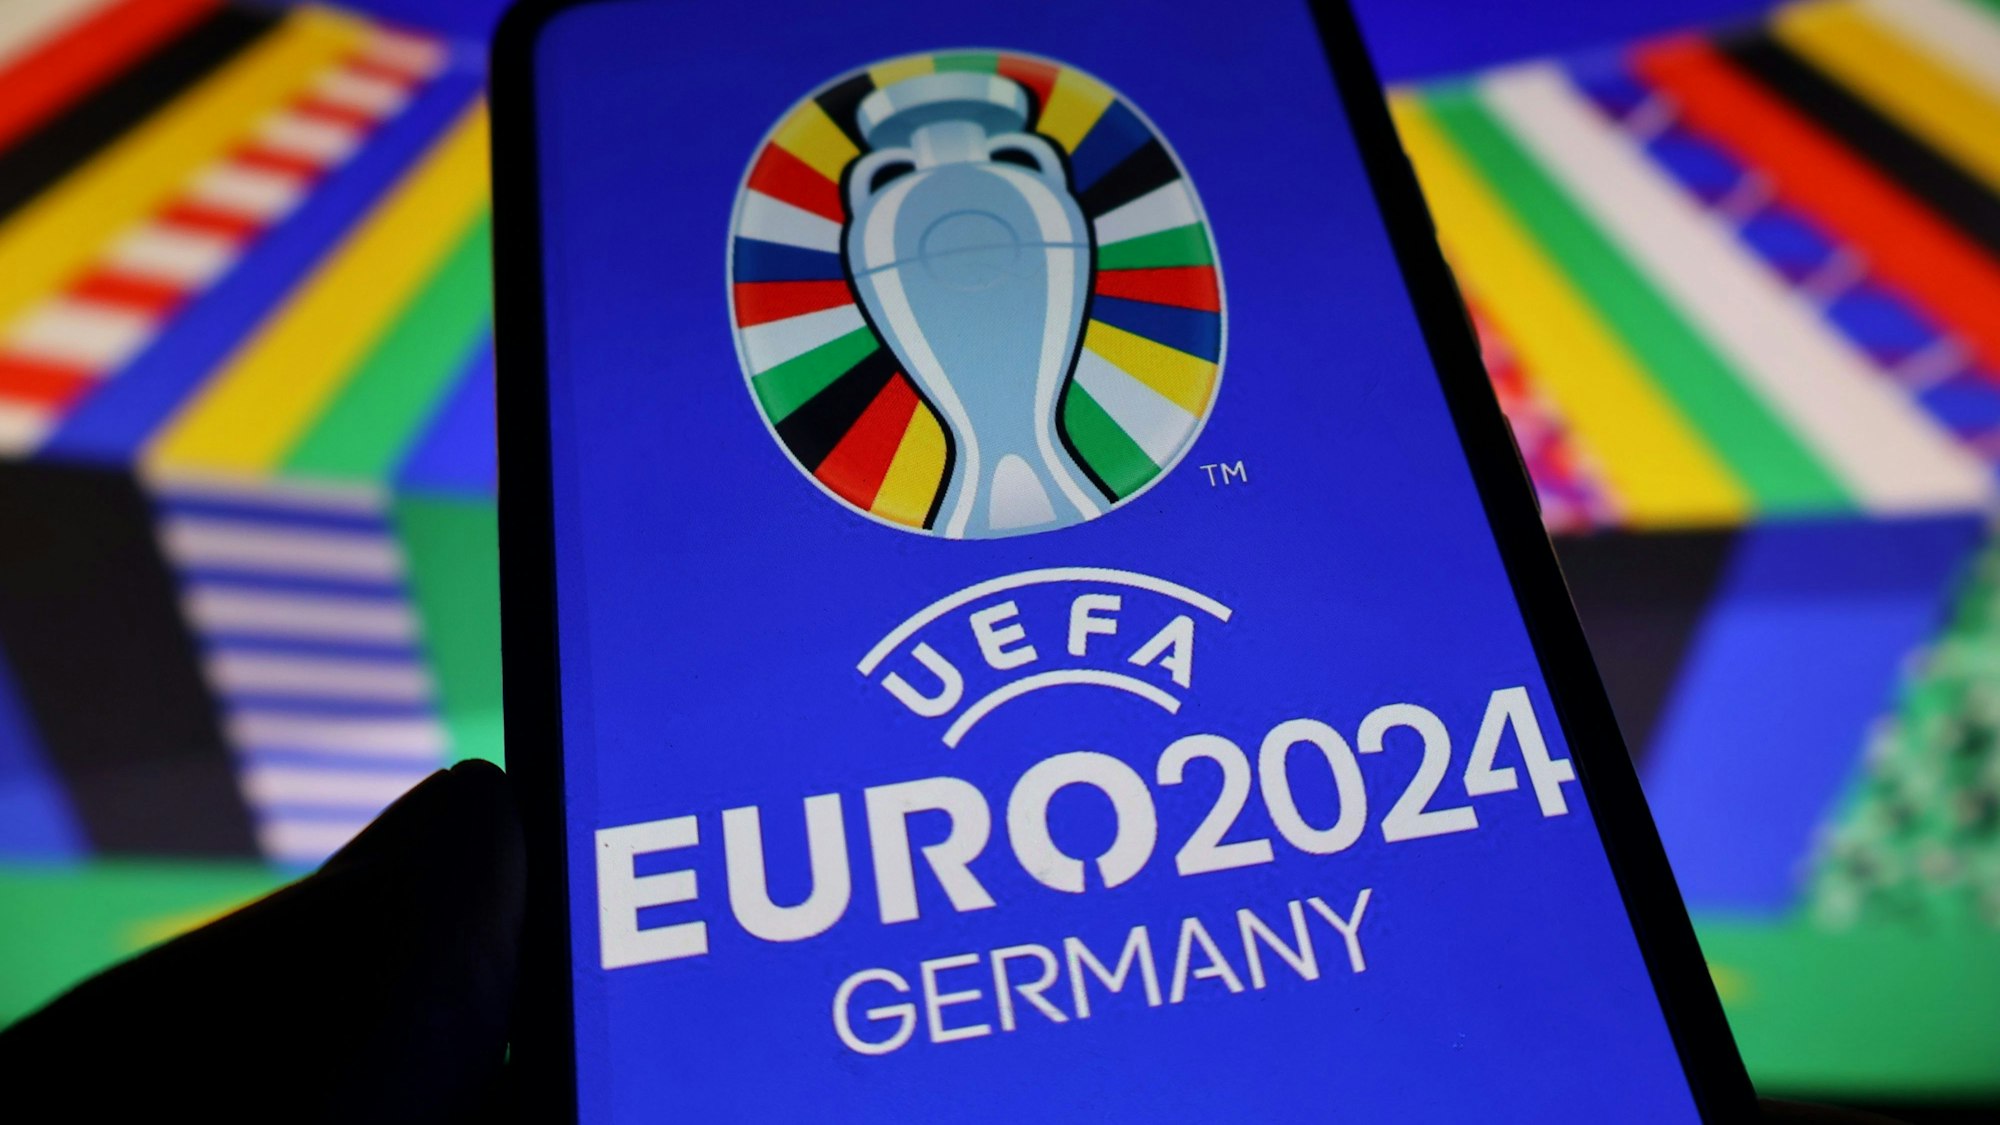 Das Logo der UEFA Euro 2024 ist auf einem Smartphone zu sehen. Die Fußball-Europameisterschaft findet vom 14.06. - 14.07.2024 in Deutschland statt.